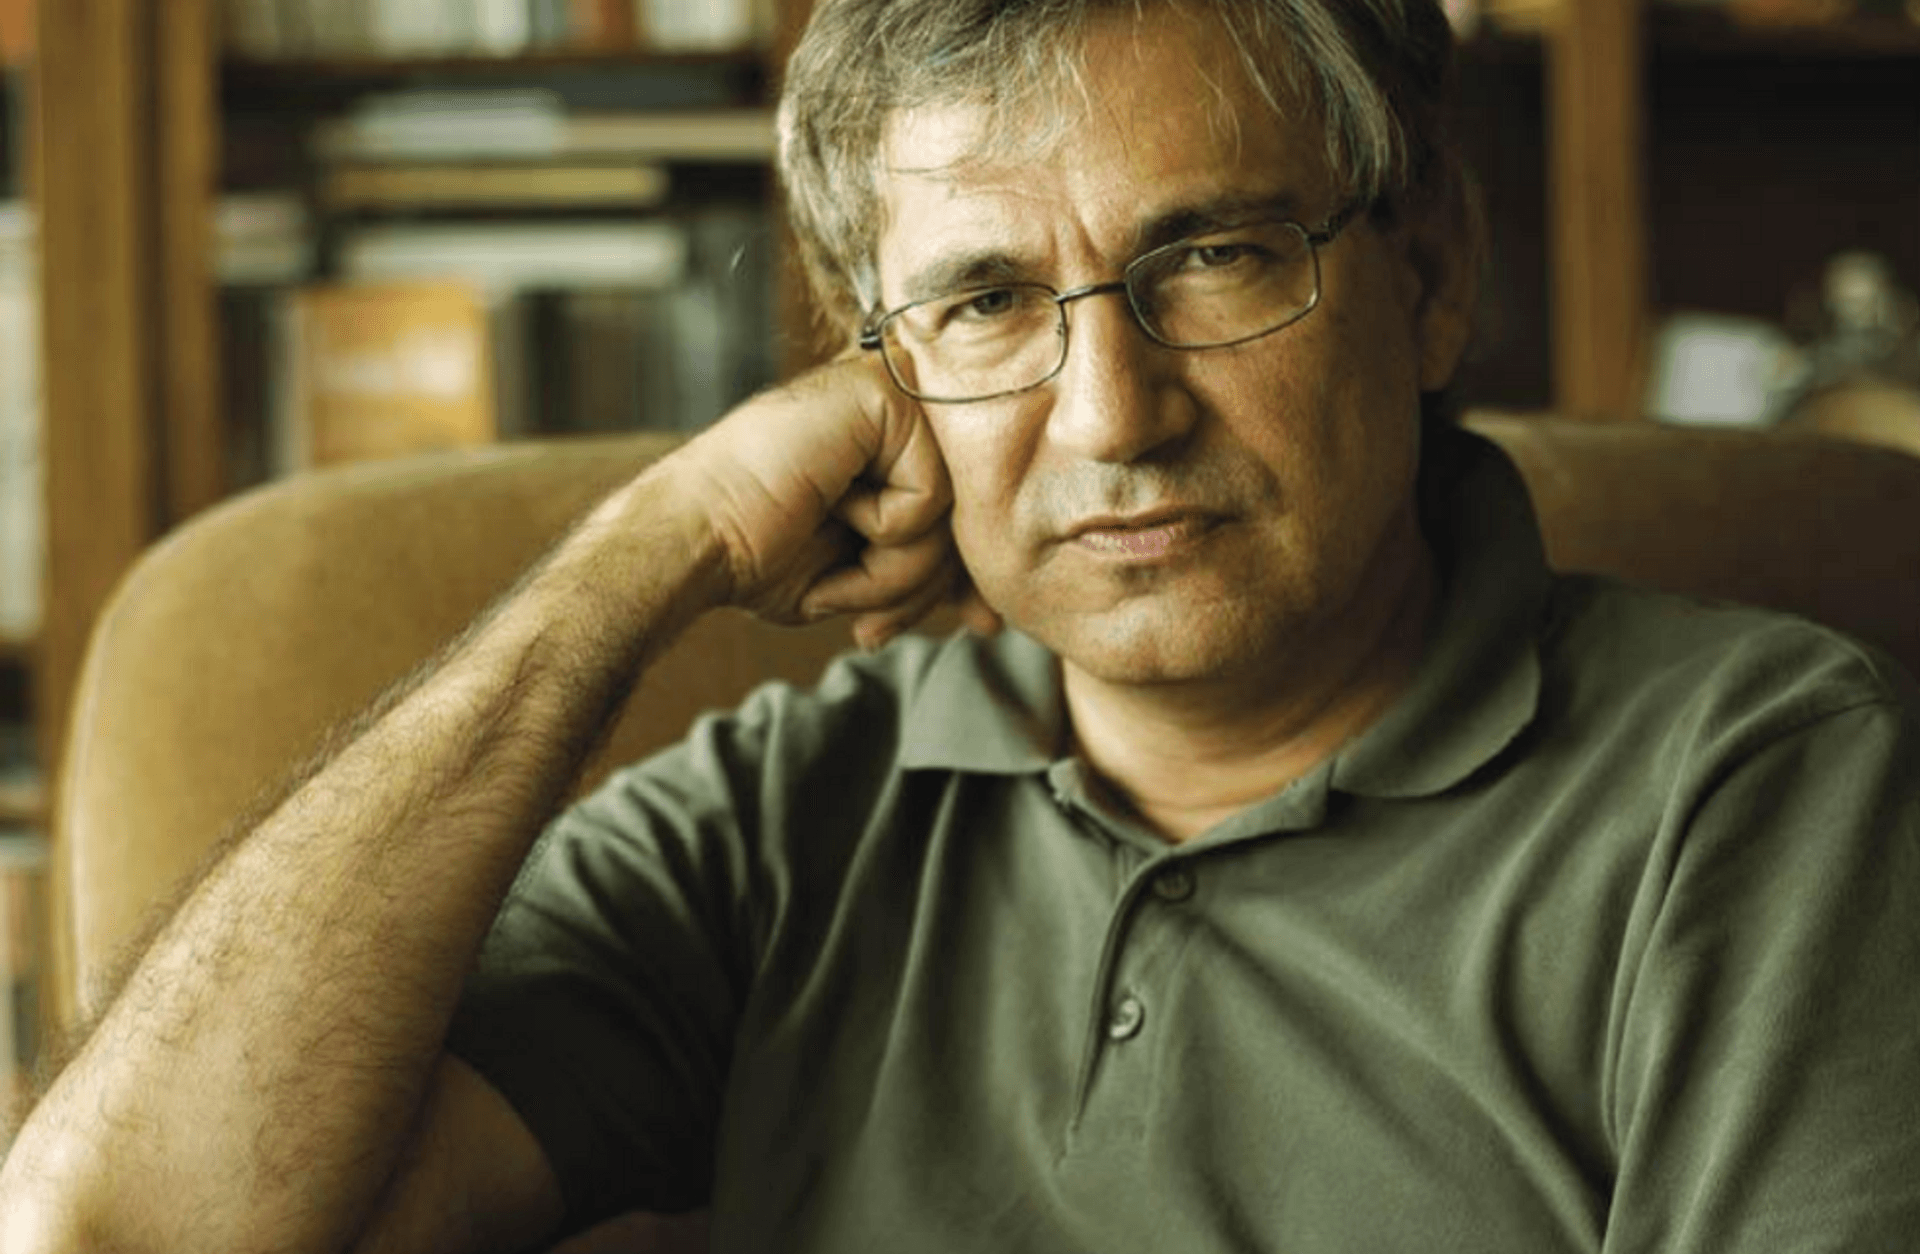 Felsefeden Edebiyata: Orhan Pamuk’un Romanlarında Dünyayı Anlamak ve Sevmek